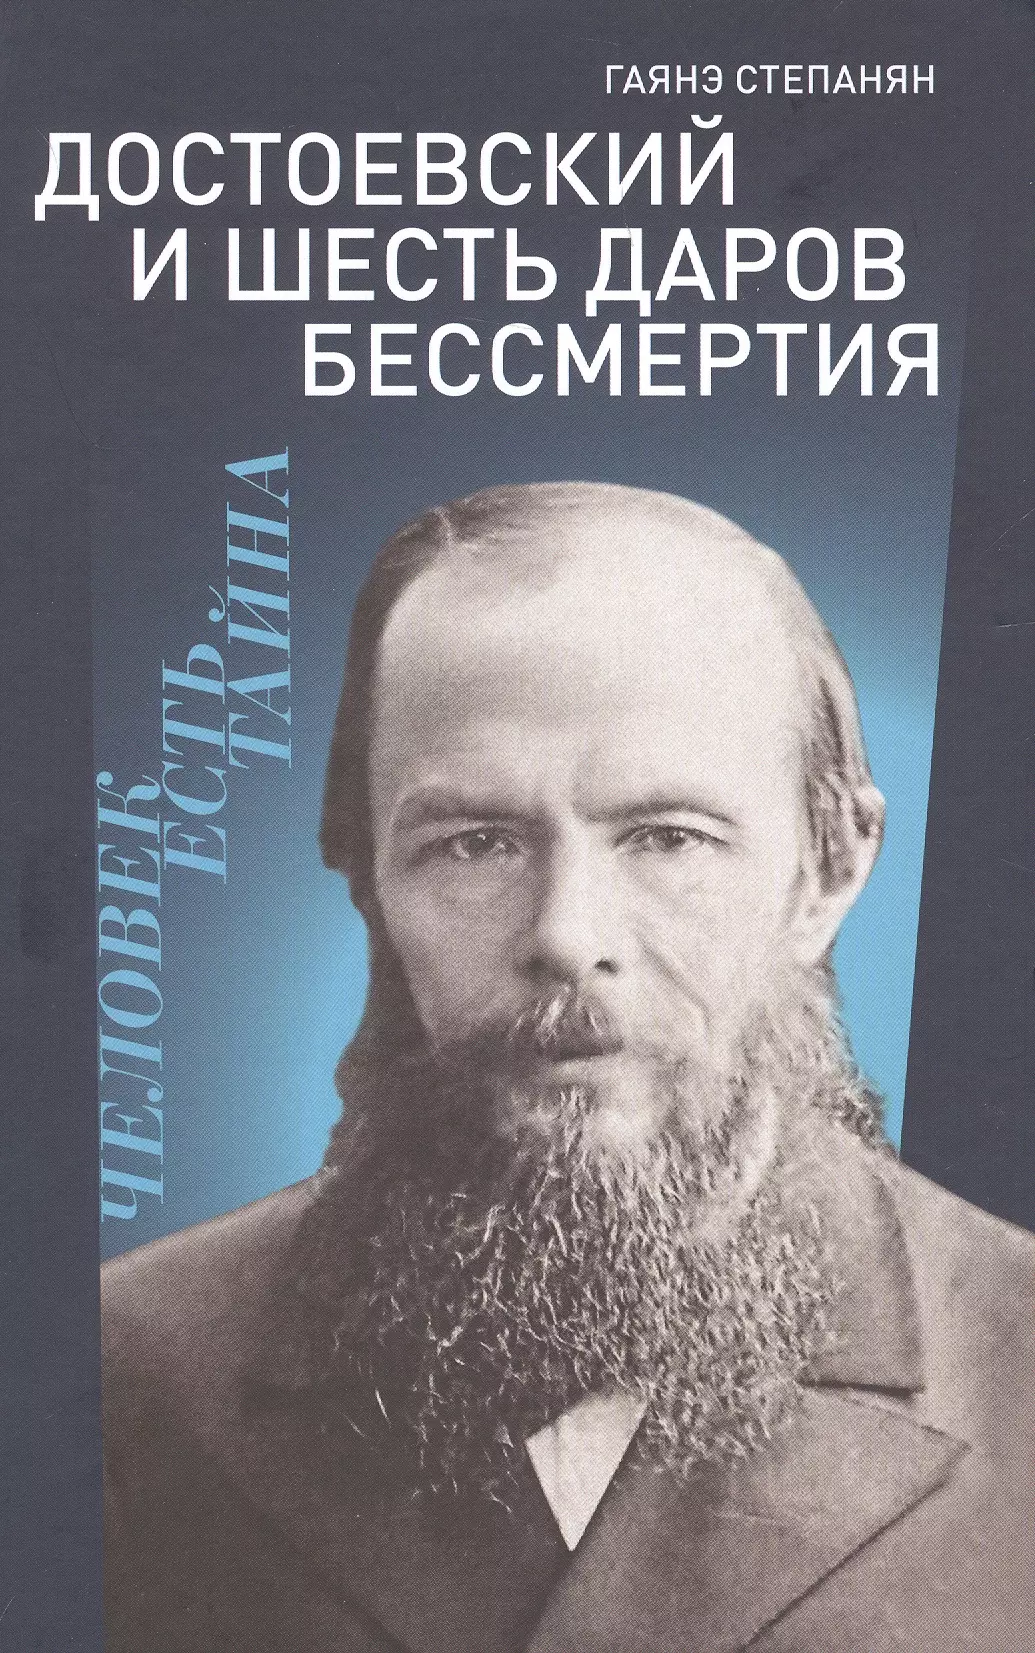 дмитриева и рецепты бессмертия Достоевский и шесть даров бессмертия